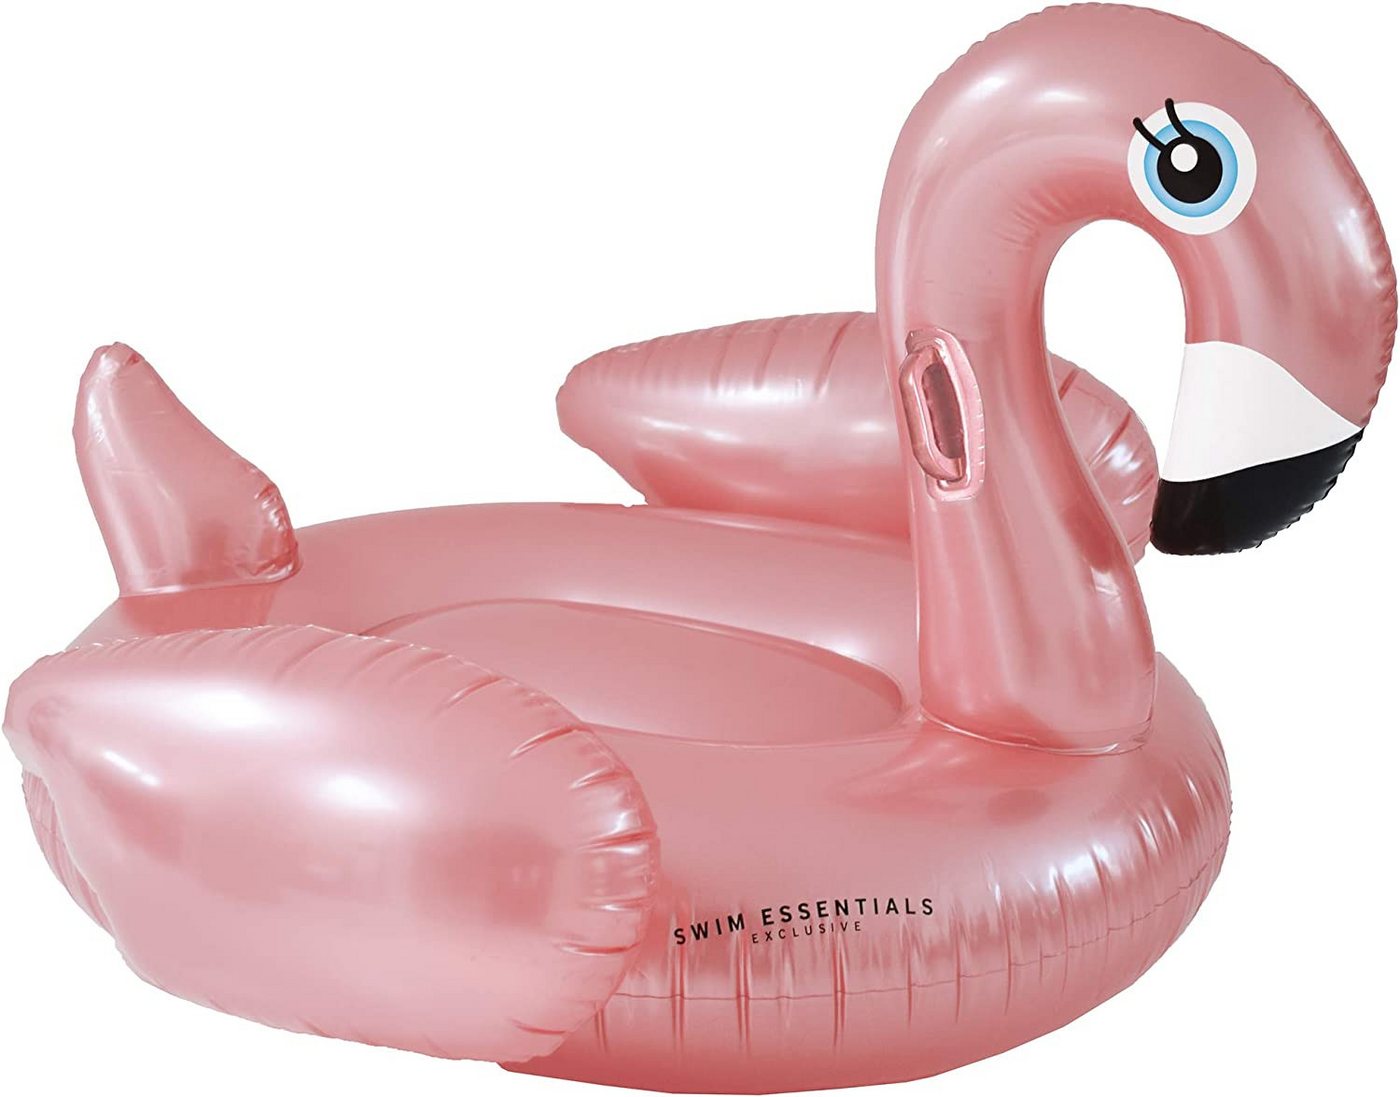 Swim Essentials Luftmatratze Swim Essentials Luxury Ride-on Pink Flamingo 142x 137 x 97 cm von Swim Essentials